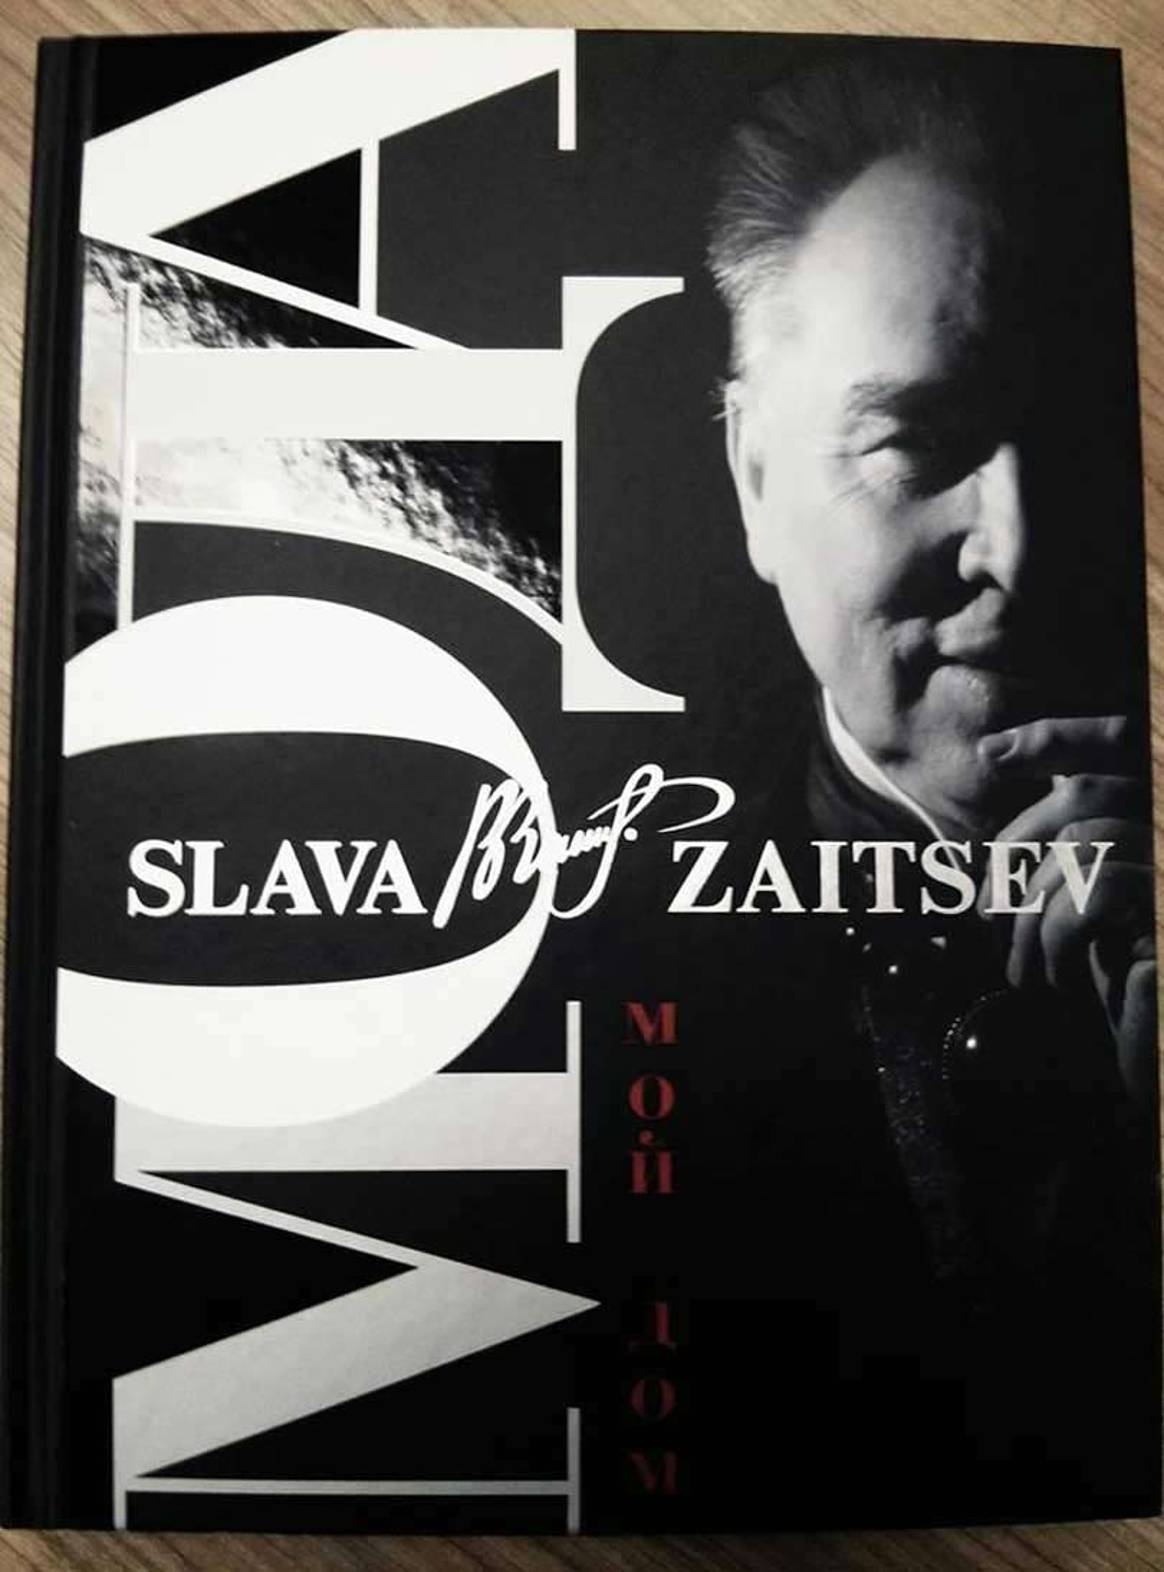 Вячеслав Зайцев представил первую автобиографическую книгу